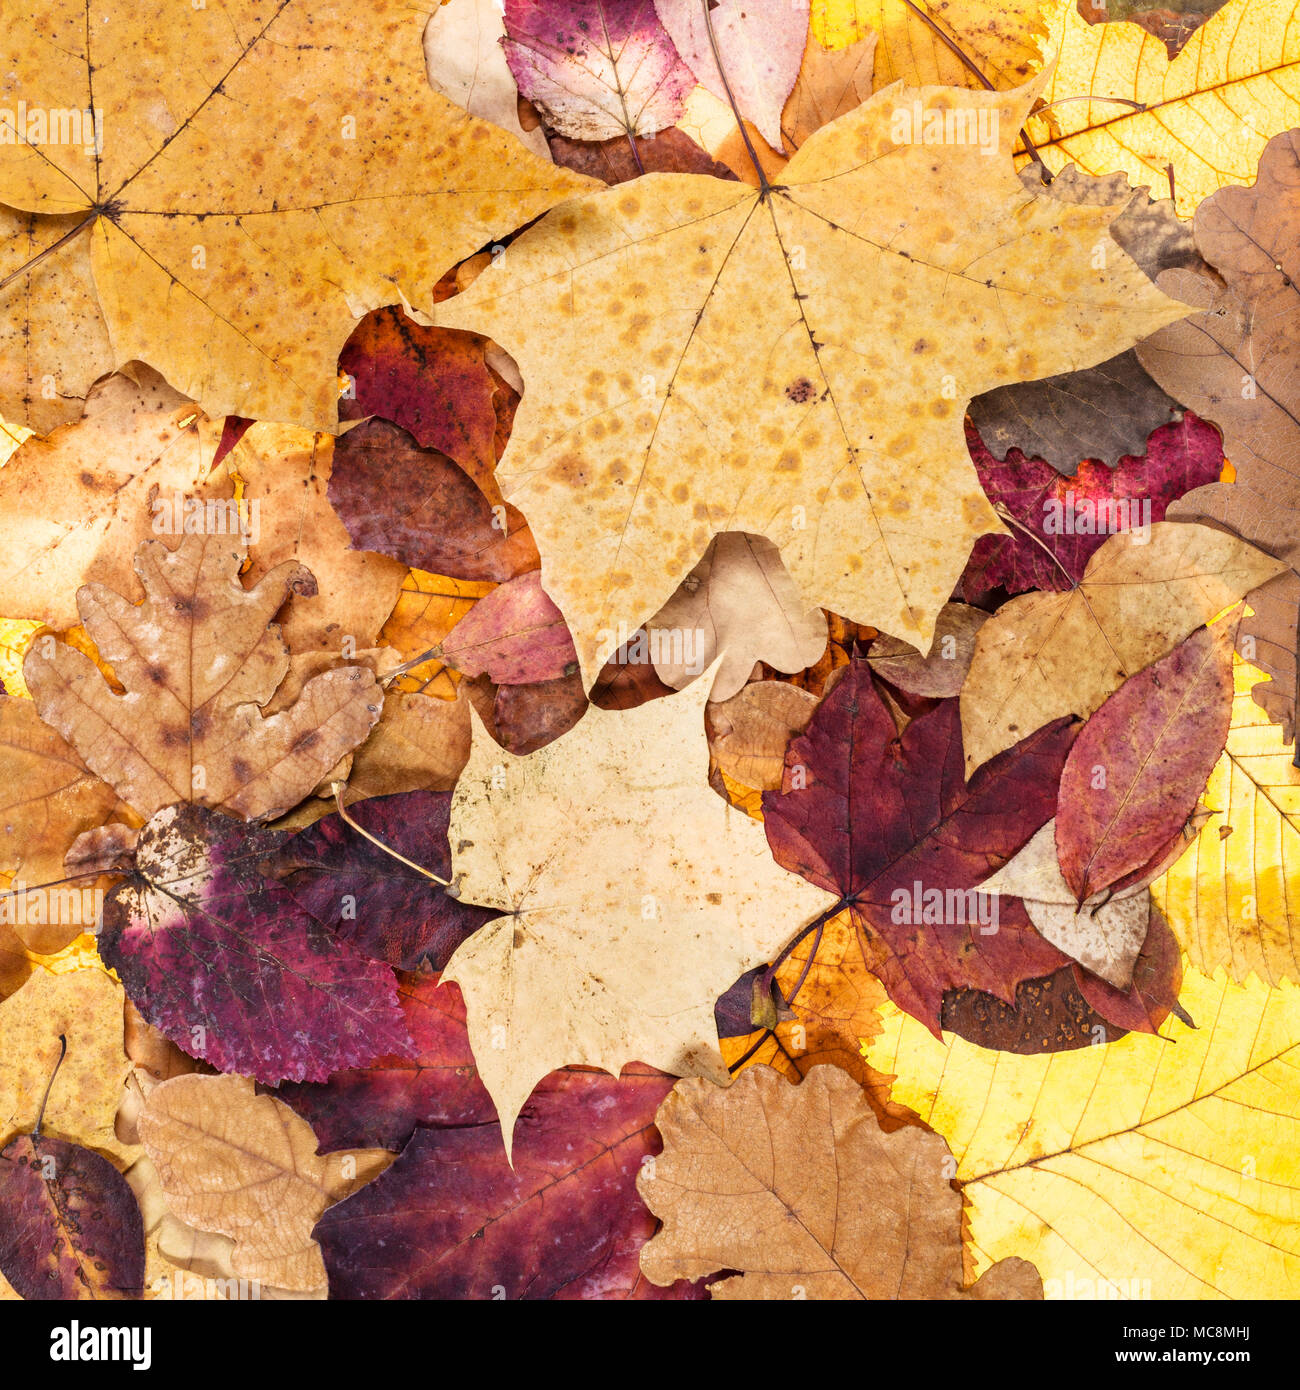 Natürliche Herbst Hintergrund aus vielen gefallenen Blätter von Eichen, Ahorn, Erle, Esche, Bäume Stockfoto